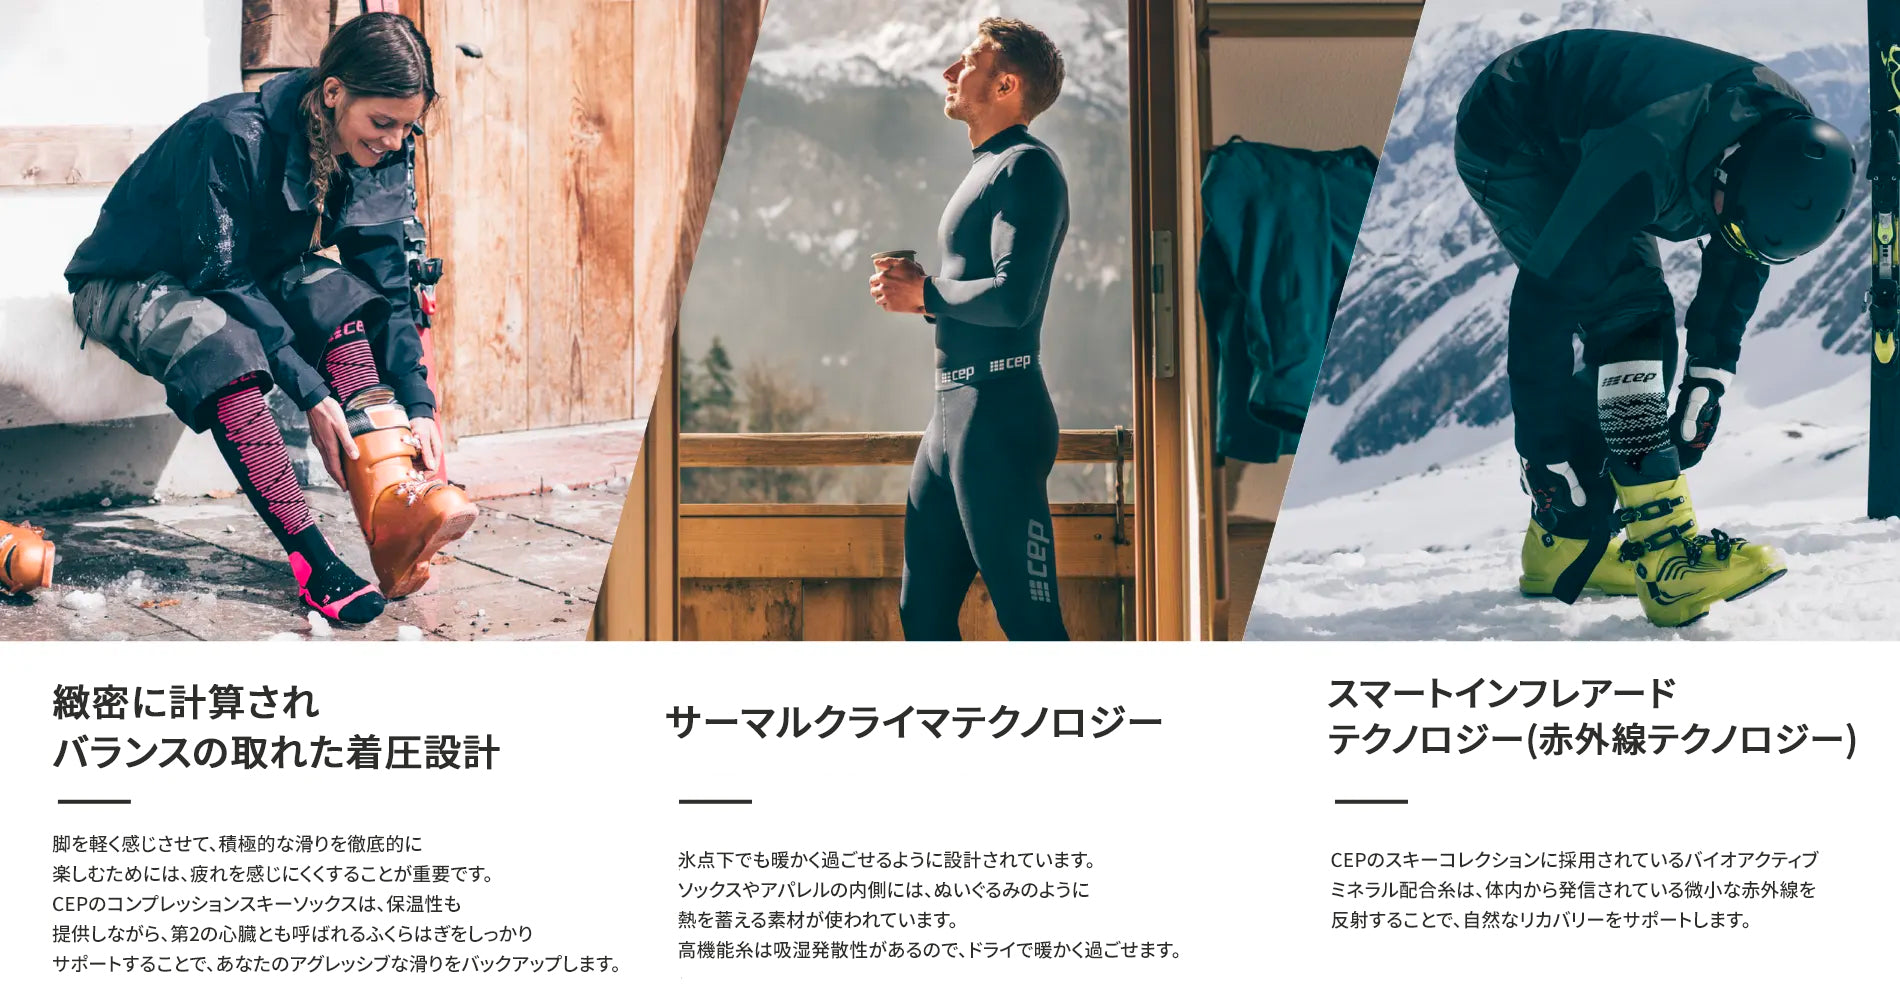 Ski – CEP Japan